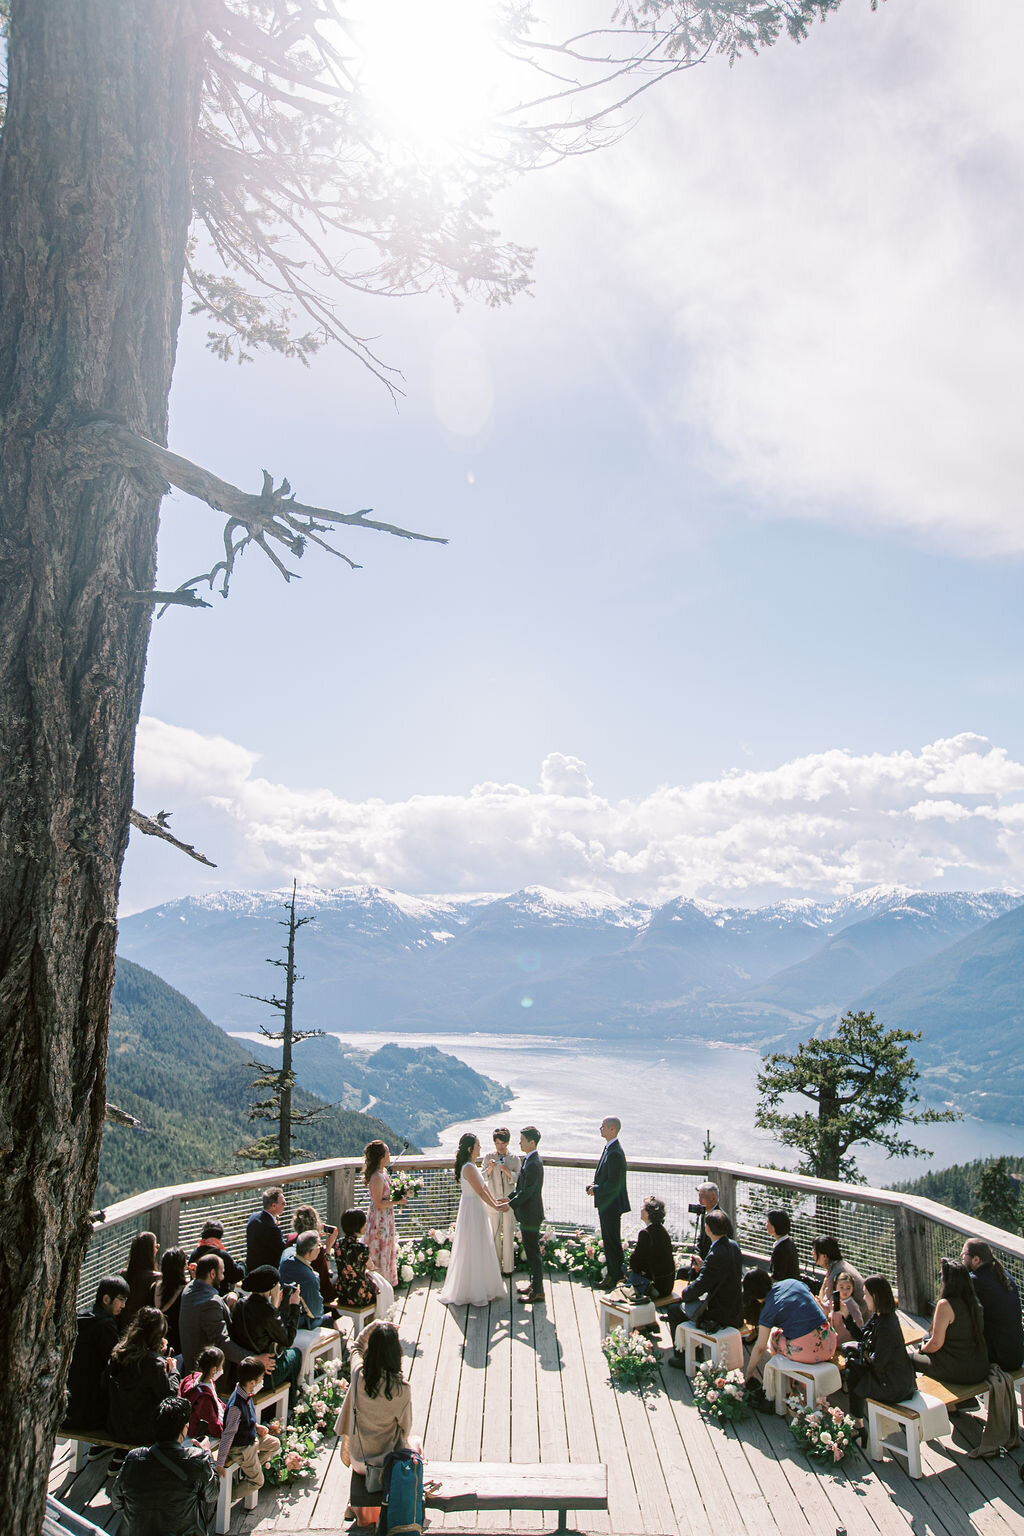 Sea to Sky Gondola Squamish wedding ceremony - Within the Flowers